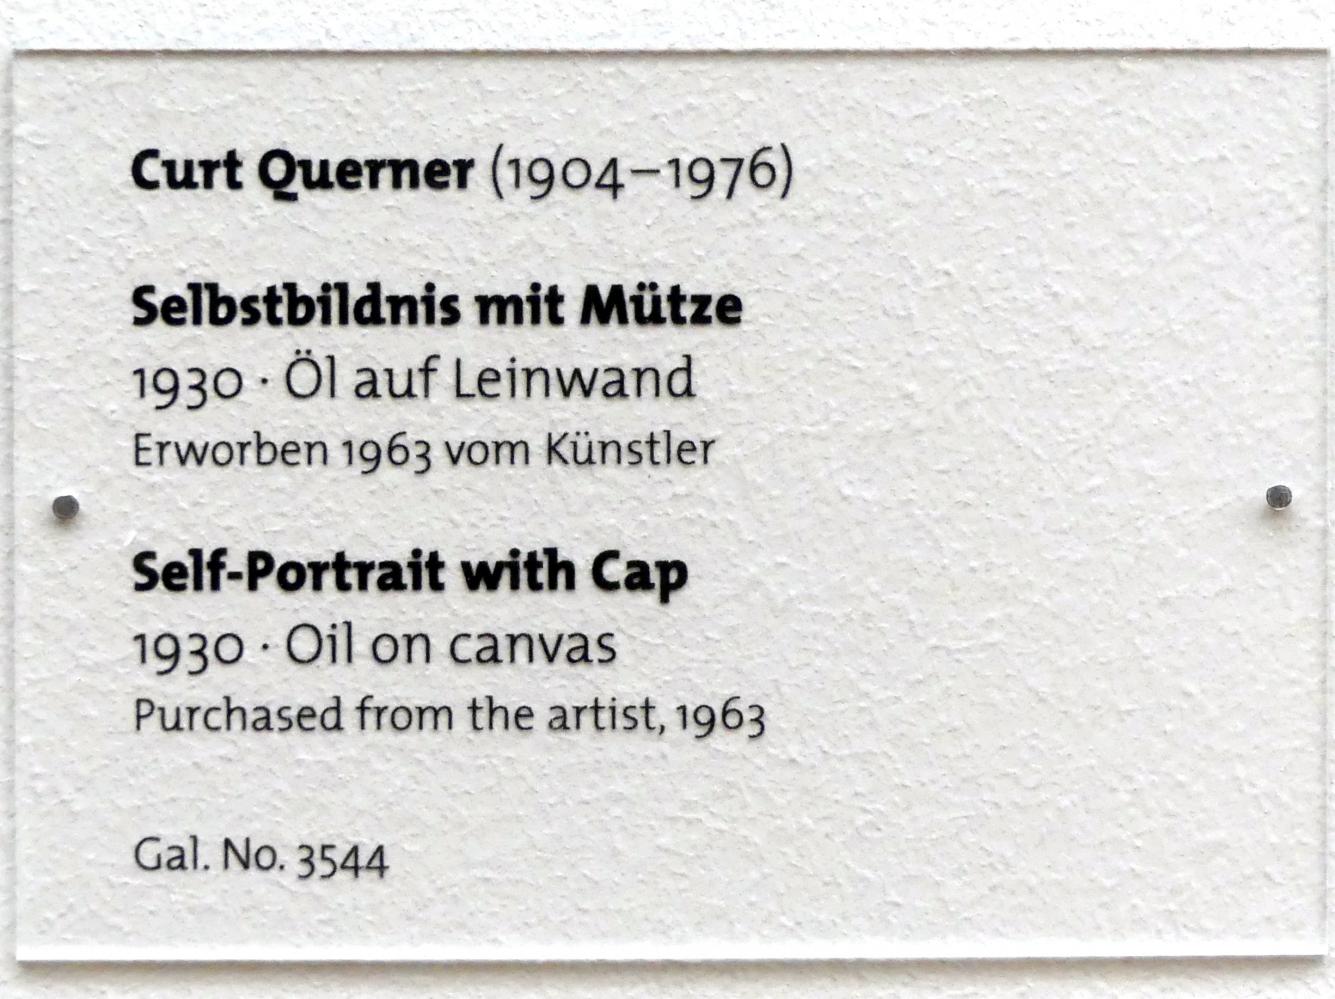 Curt Querner (1930–1947), Selbstbildnis mit Mütze, Dresden, Albertinum, Galerie Neue Meister, 2. Obergeschoss, Saal 15, 1930, Bild 2/2